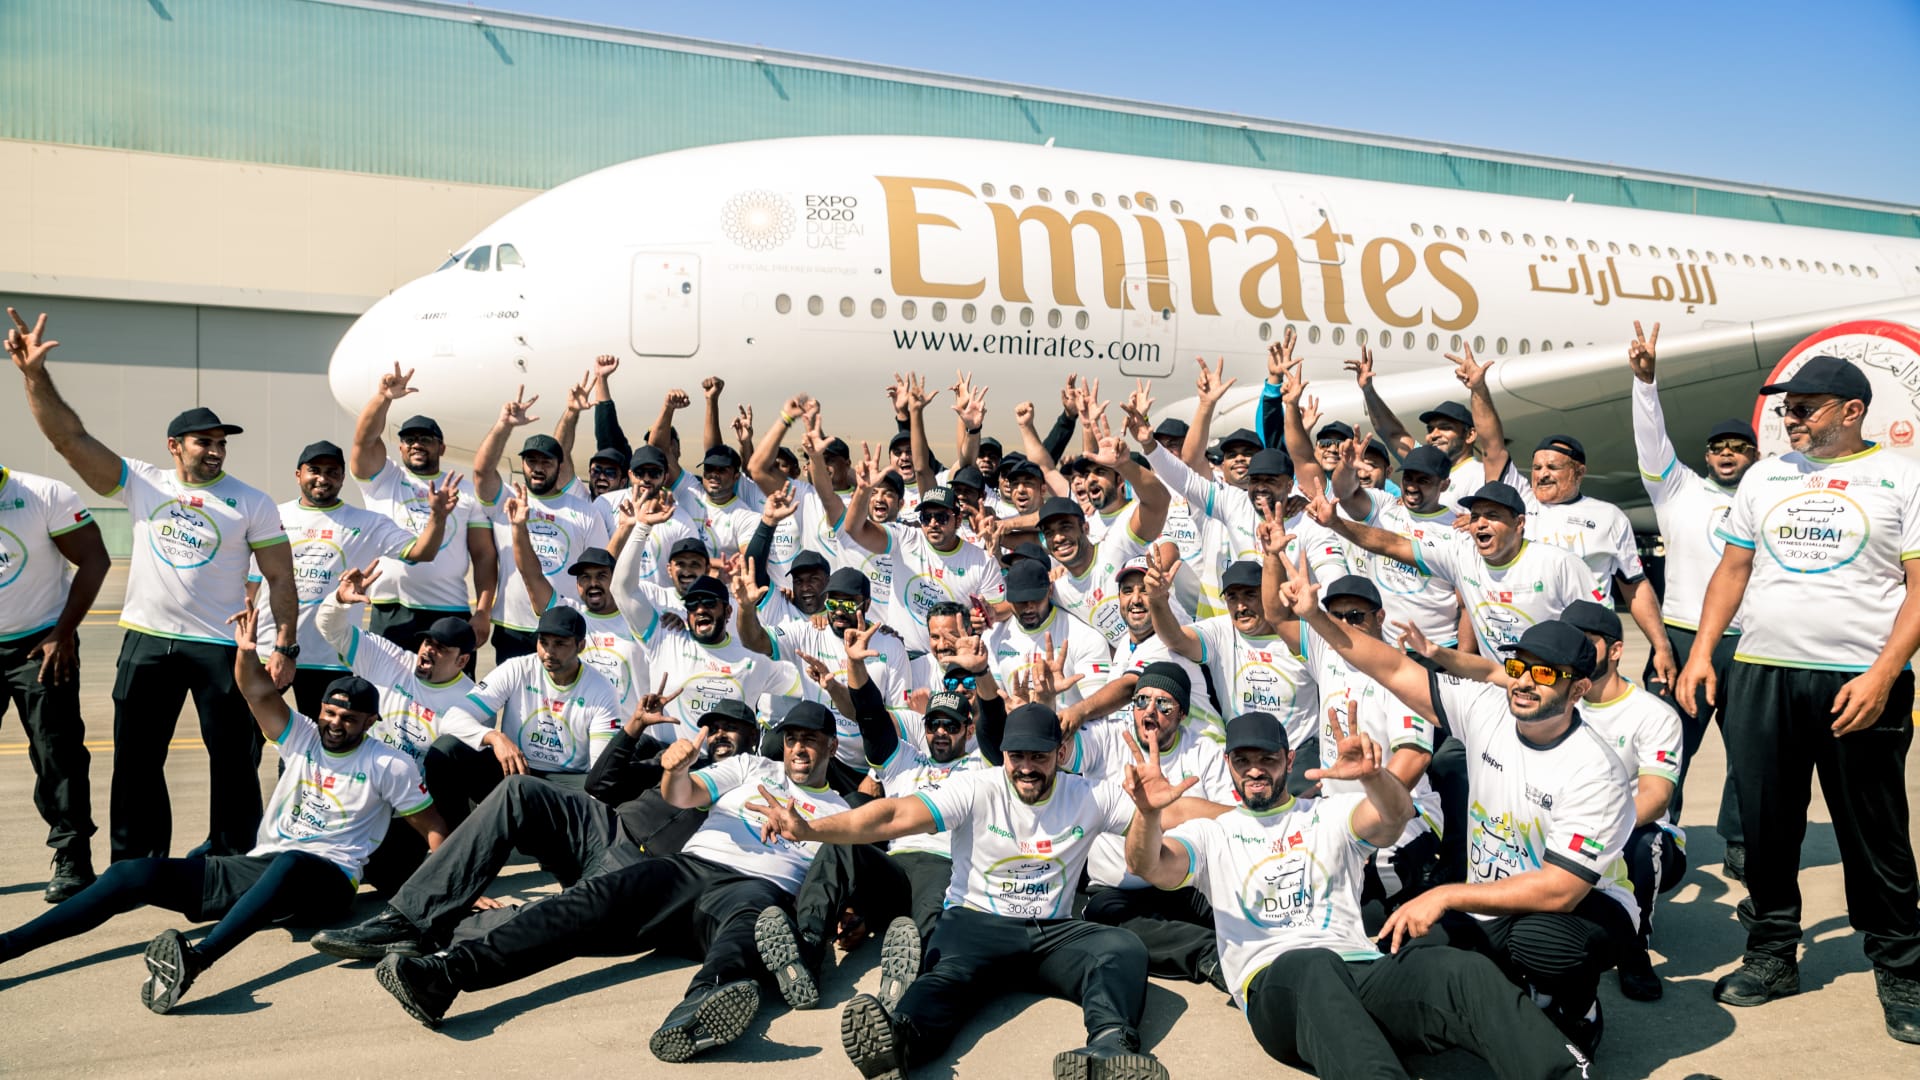 شرطة دبي تكسر الرقم القياسي وتسحب طائرة آيرباص A380-800